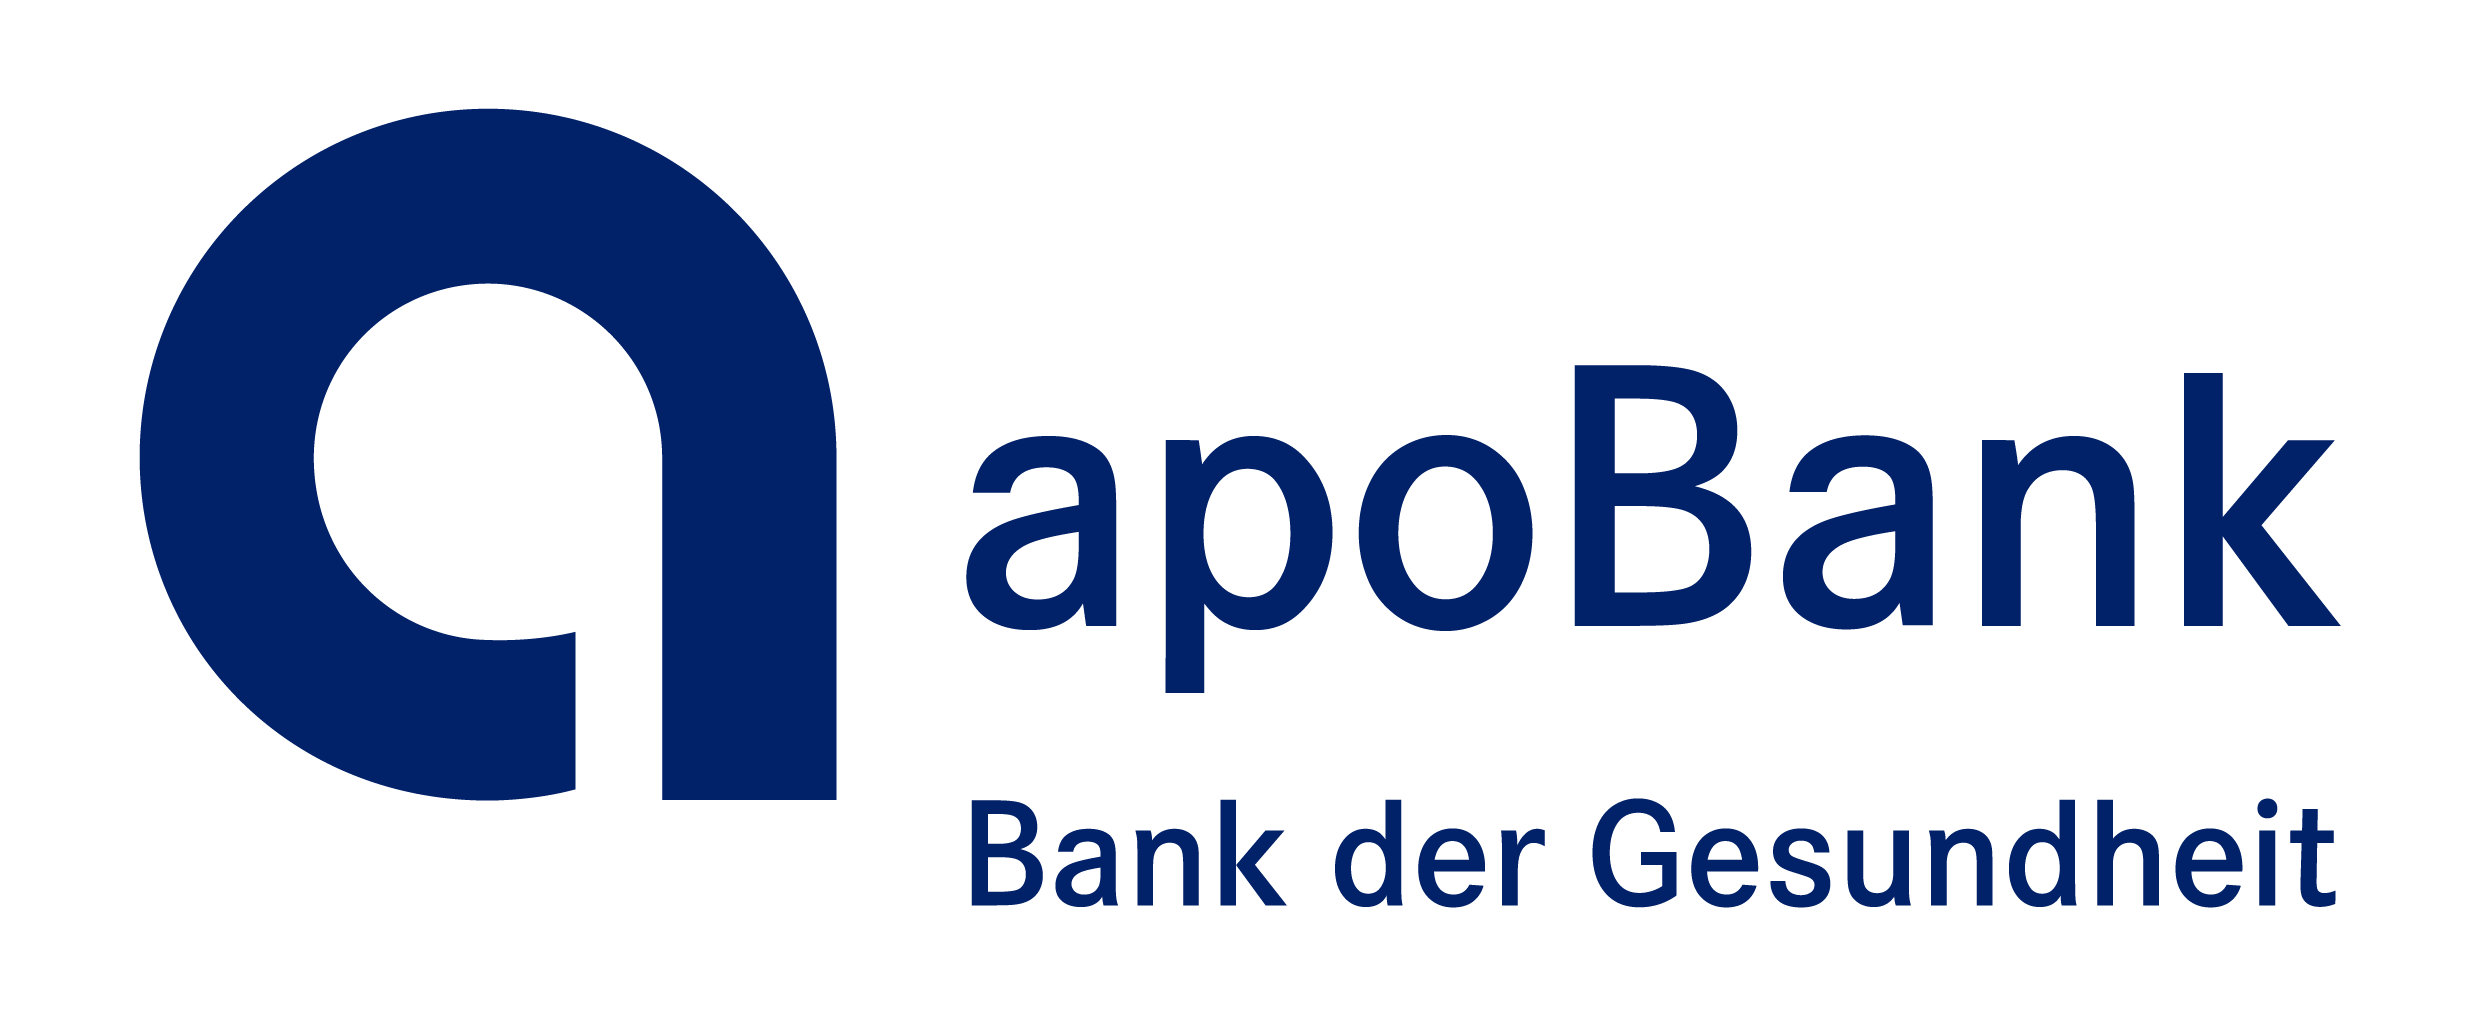 Apobank Logo 2021 Rgb